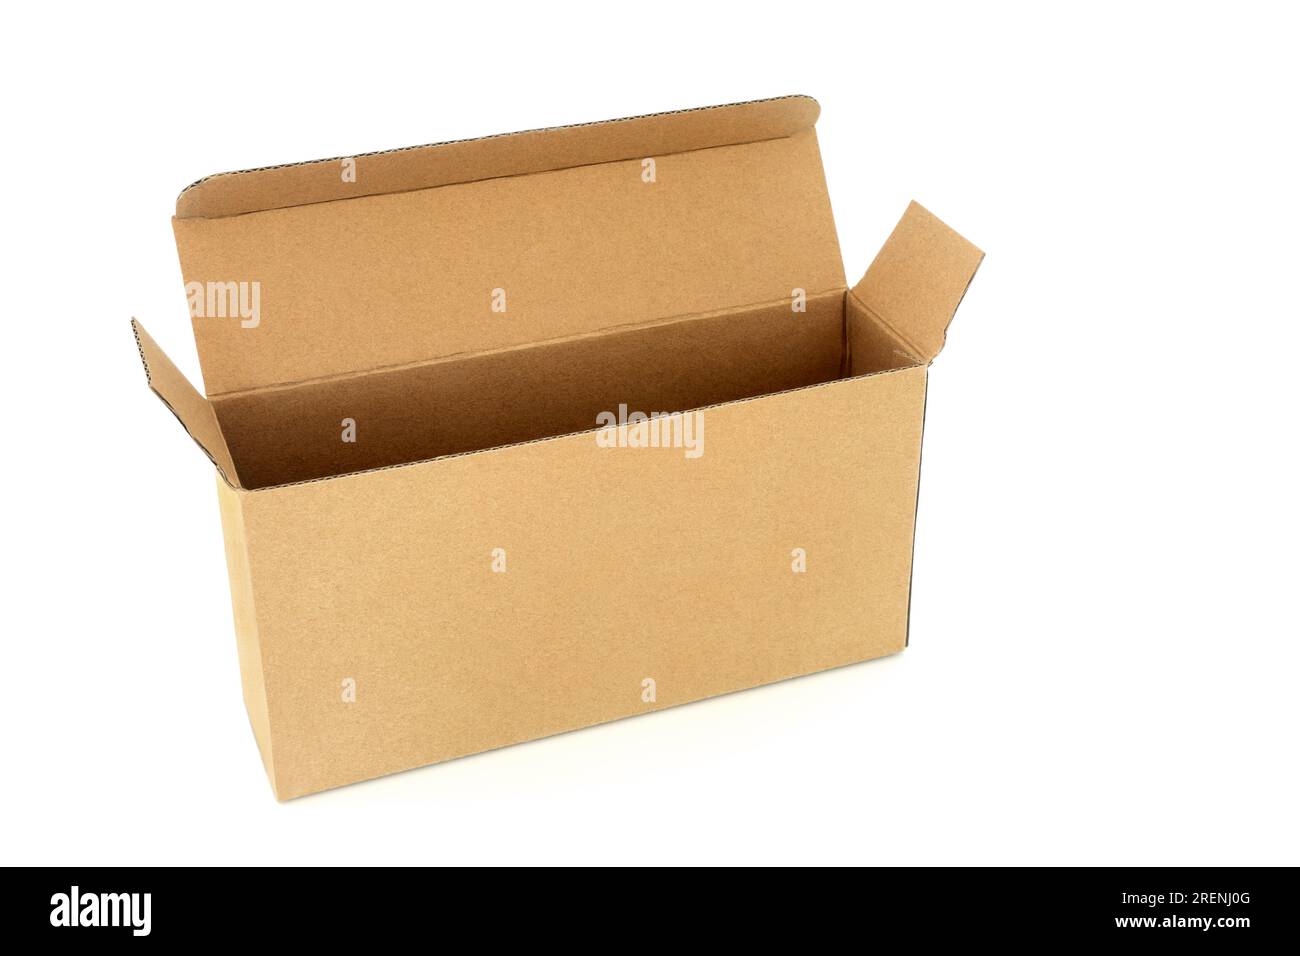 Schlanke rechteckige Box aus braunem Karton auf weißem Hintergrund. Umweltfreundliches wiederverwendbares Recyclingmaterial für Paketsendungen. Stockfoto